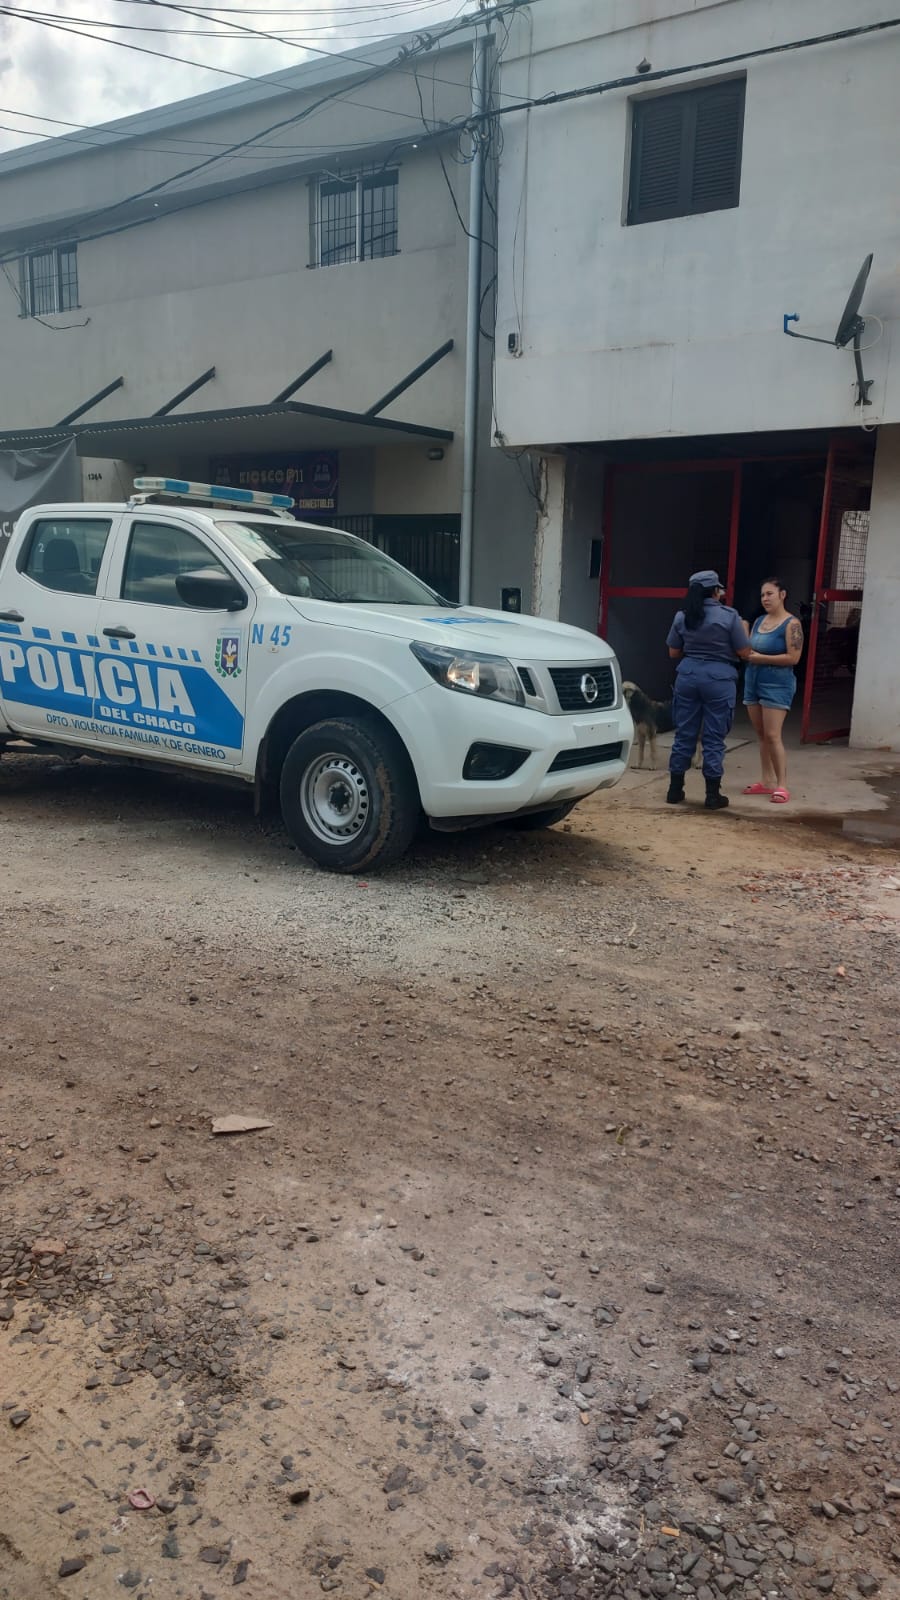 La Policía del Chaco busca a una persona que rompió su tobillera electrónica